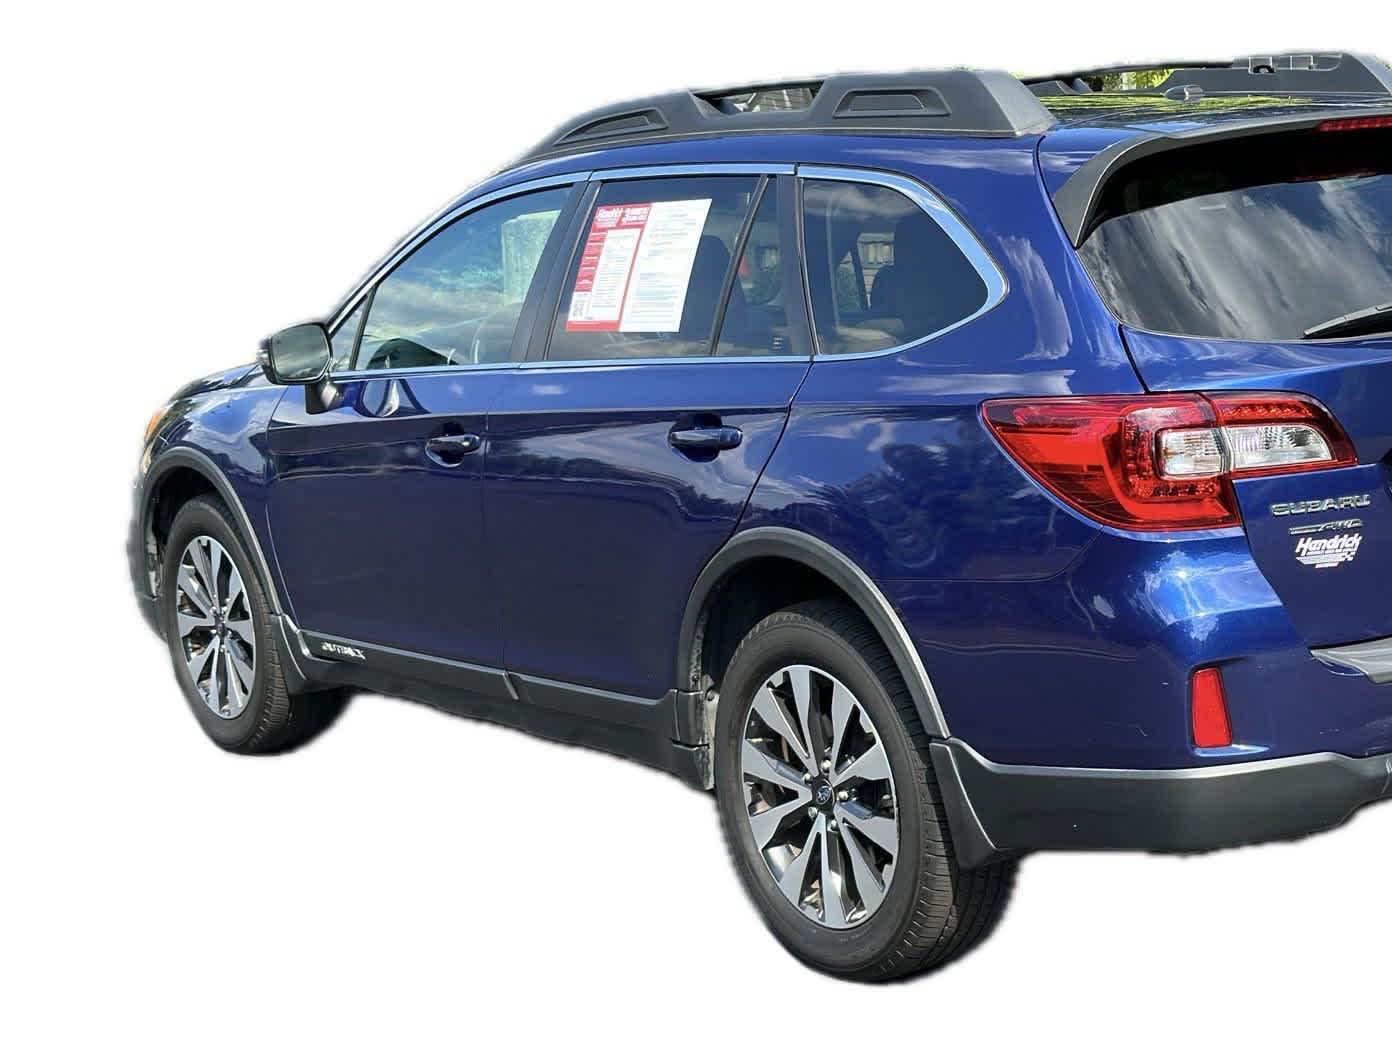 2015 Subaru Outback 2.5i Limited 6